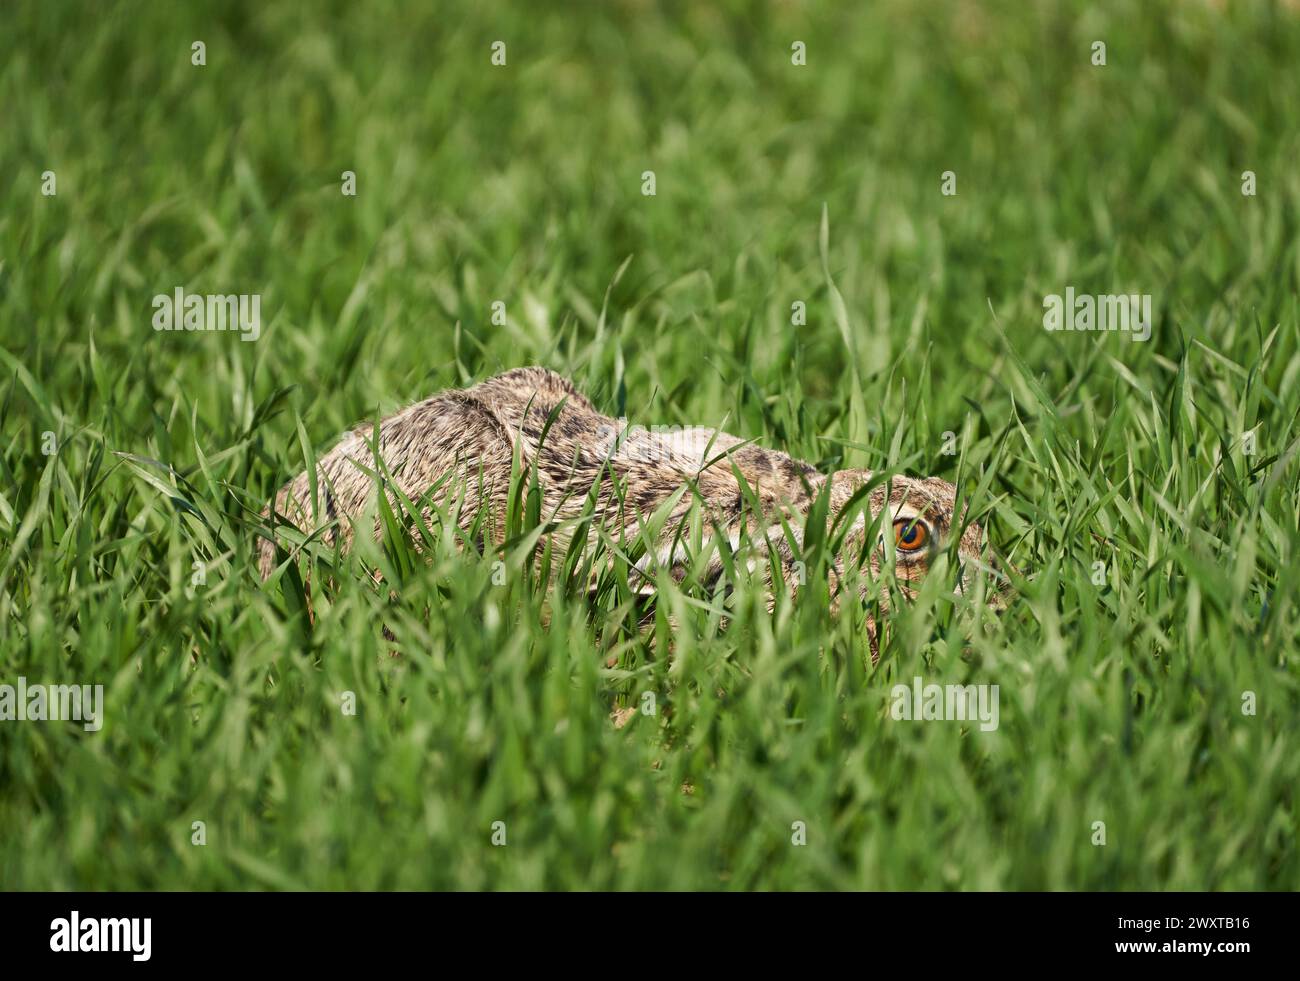 Lepre adulta nascosta in un campo di grano, accovacciata al suolo, pronta a correre Foto Stock